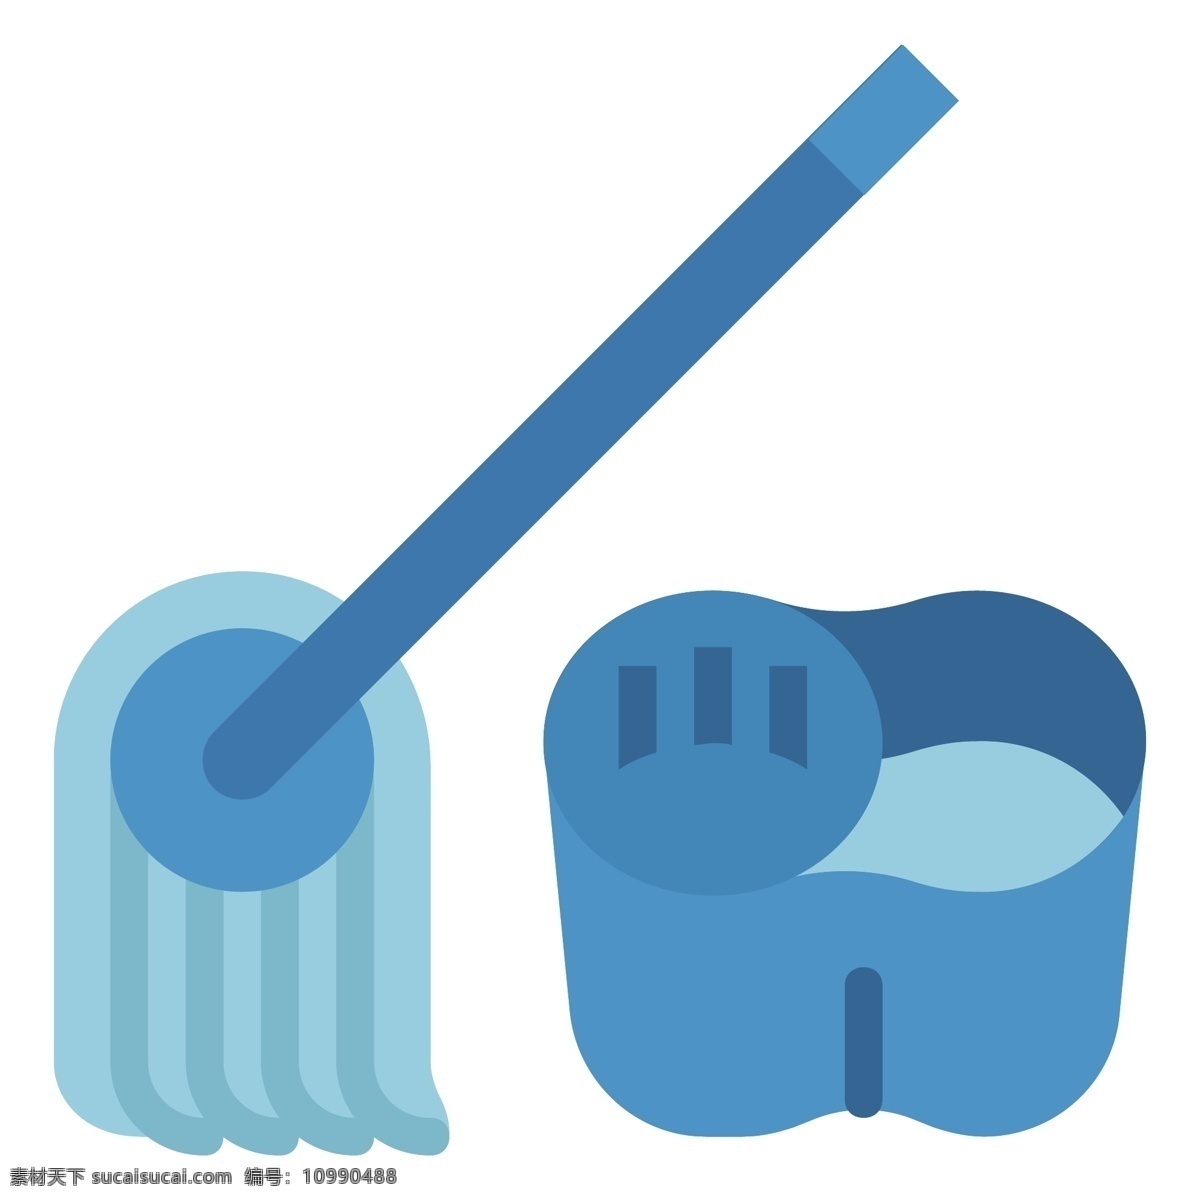 打扫 卫生 拖布 插画 清洁套装 清洁 打扫卫生 蓝色水桶 蓝色拖布 拖把头 拖布头 清洁工具 日常用品